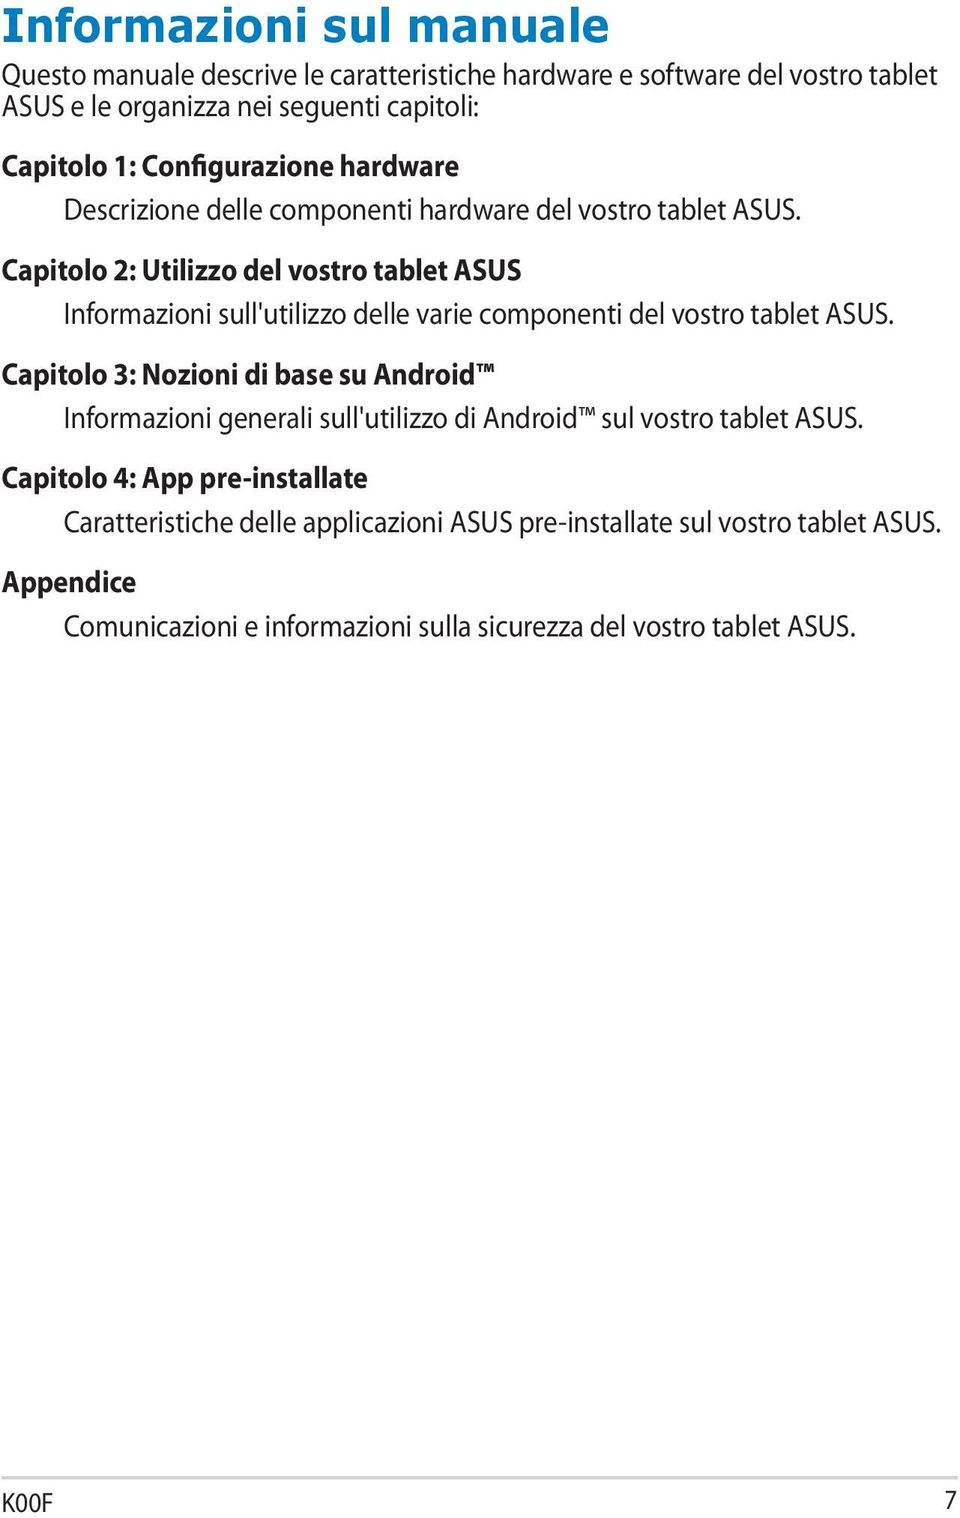 Capitolo 2: Utilizzo del vostro tablet ASUS Informazioni sull'utilizzo delle varie componenti del vostro tablet ASUS.